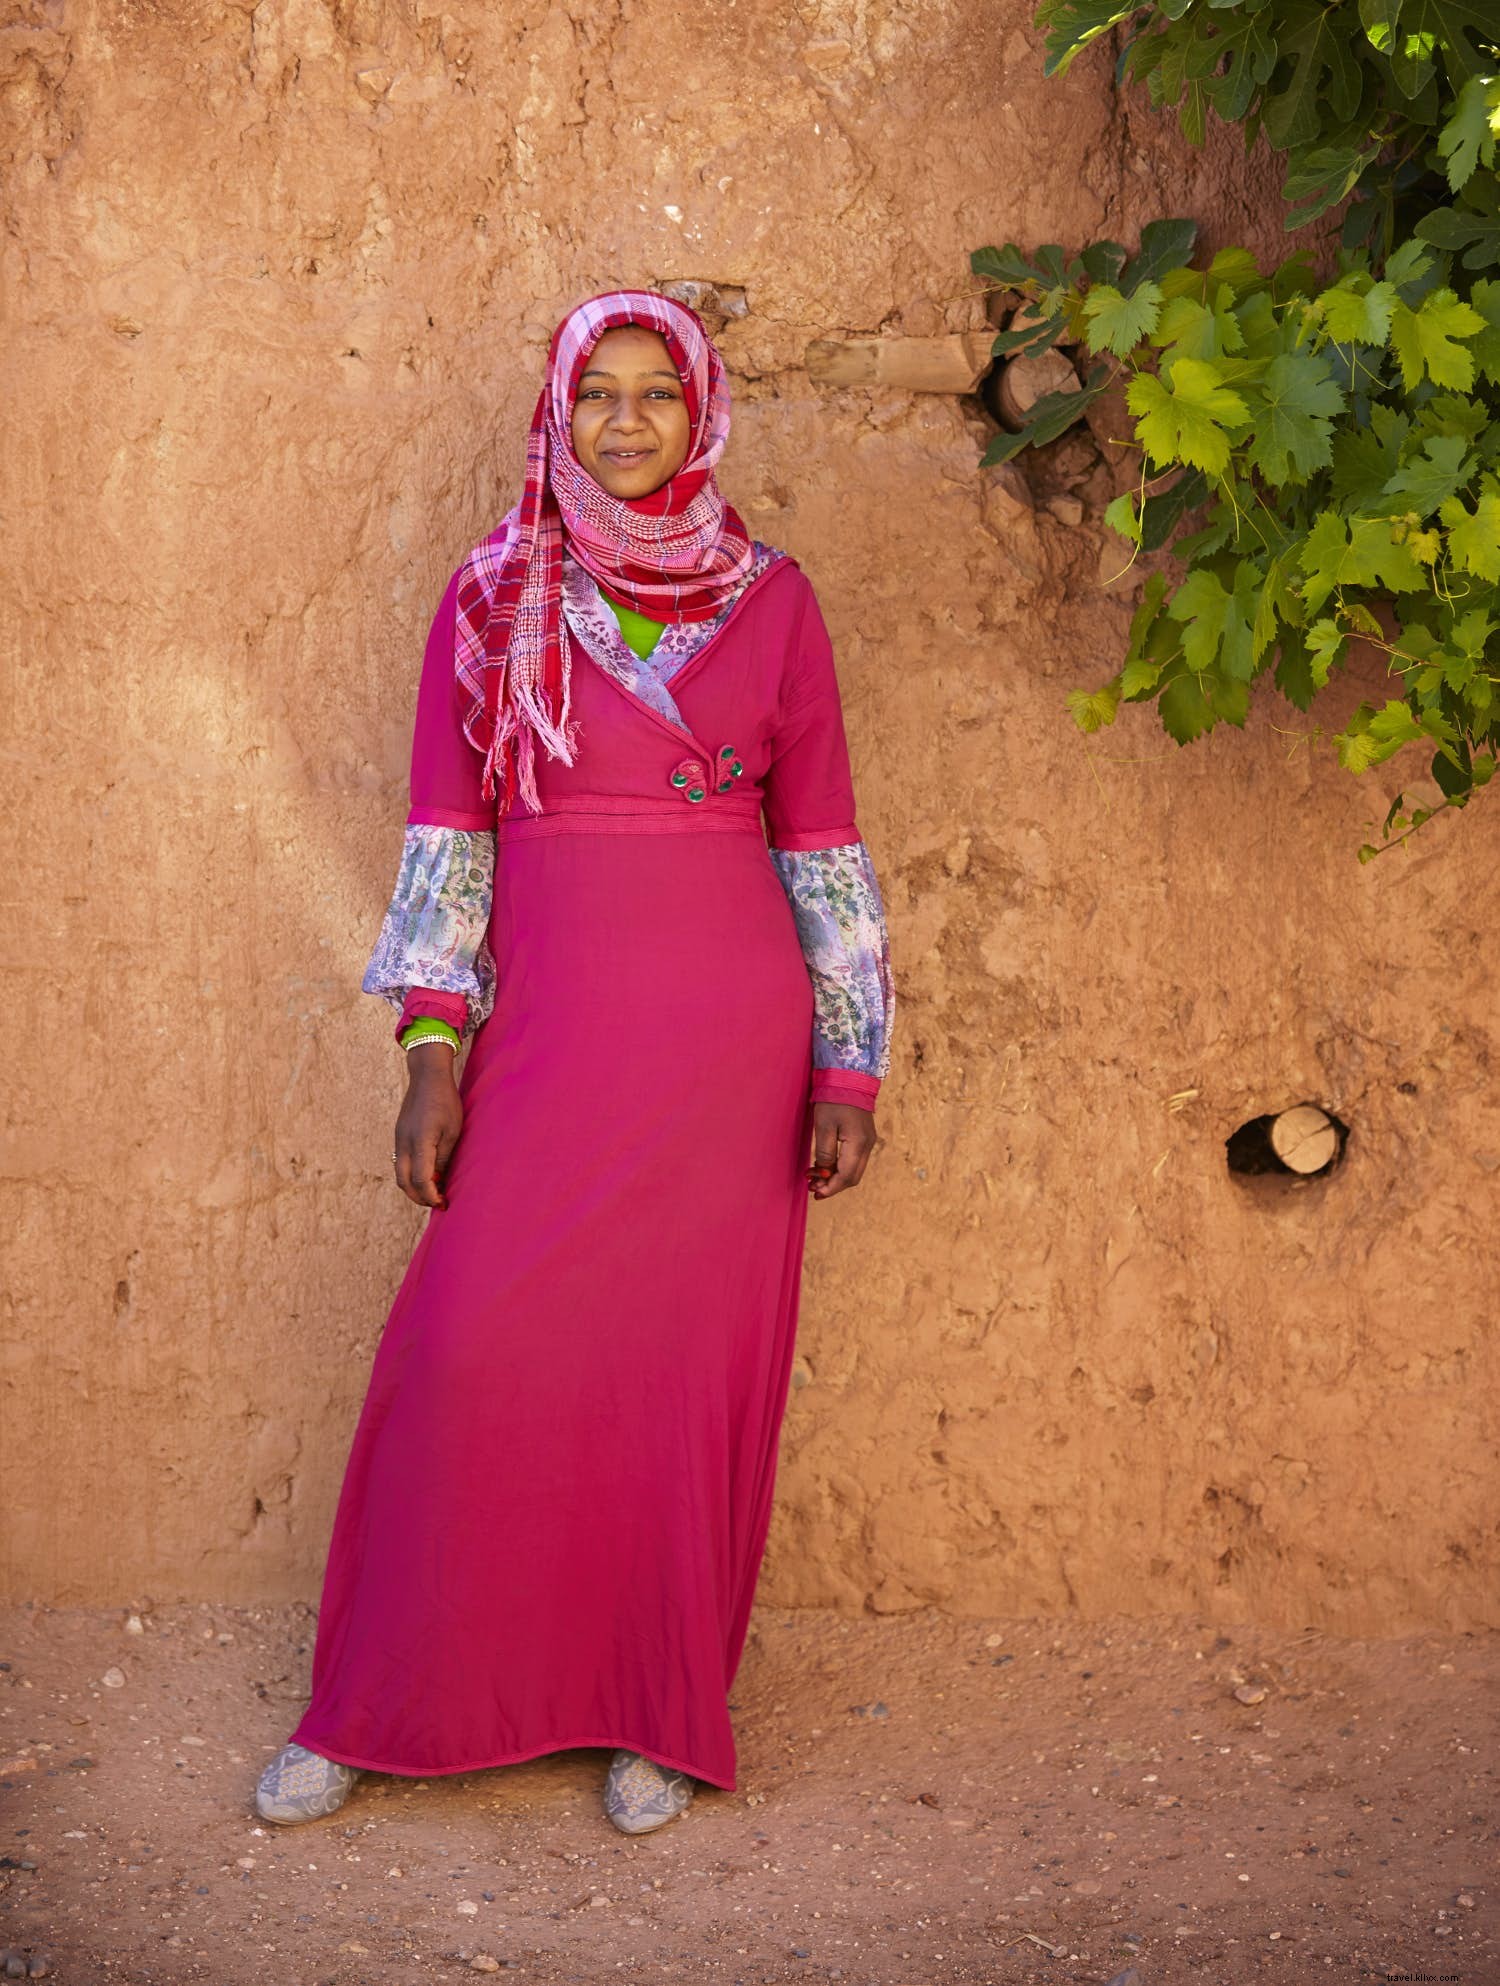 Valle de las Rosas:descubre el festival floral de Marruecos 